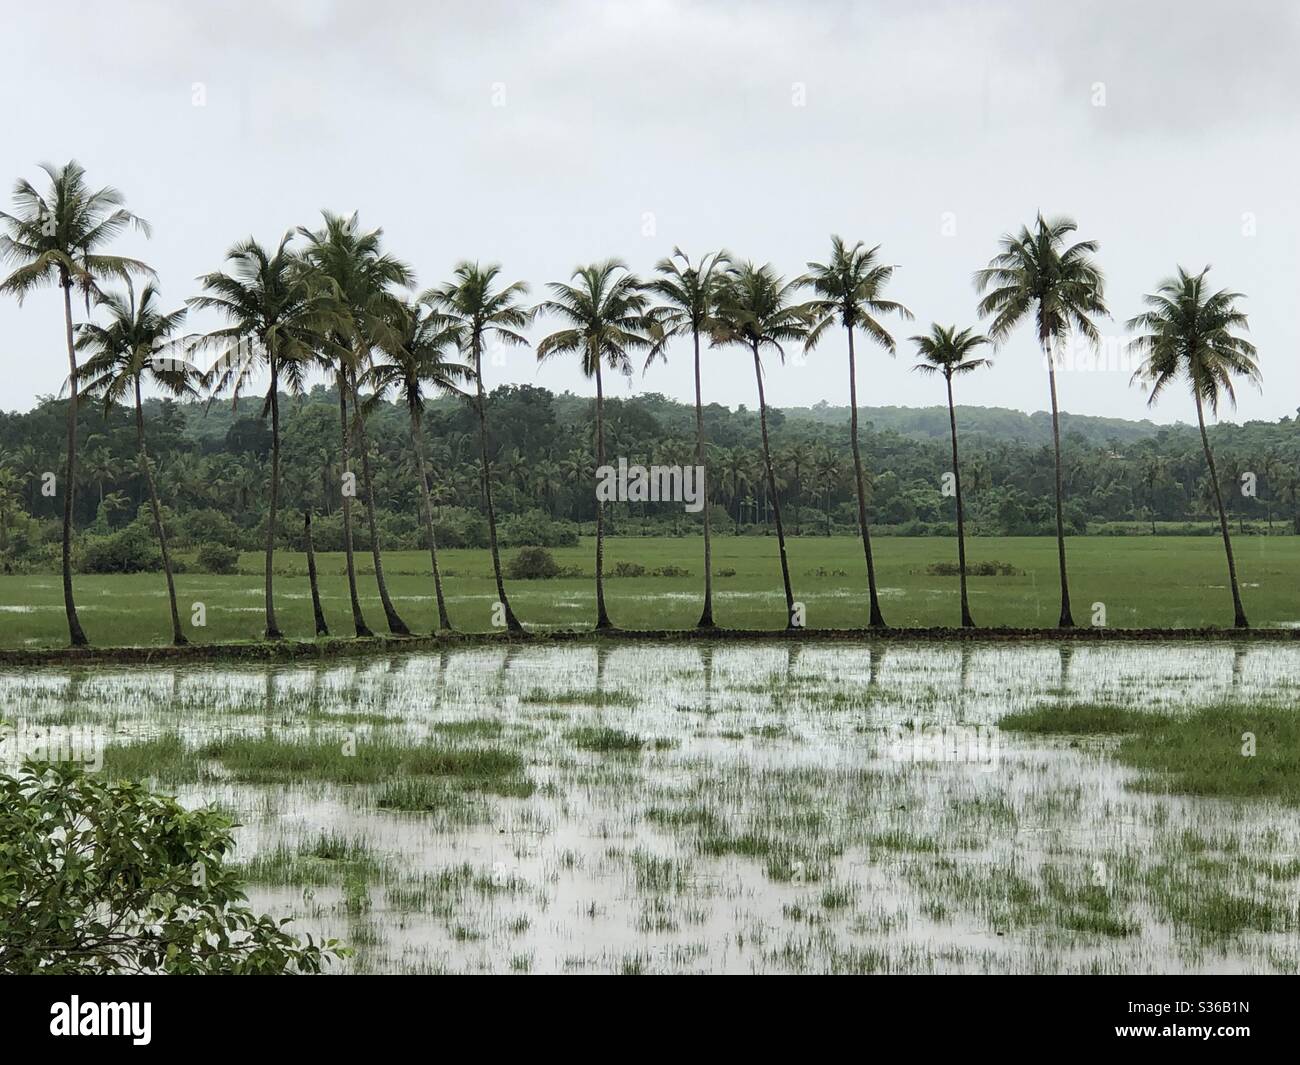 Una fila di palme da cocco nel mezzo di risaie allagate in Arambol, Goa, India. Goa fu governata dal Portogallo per 451 anni e fino al 1961. 18 maggio 2020. Foto Stock